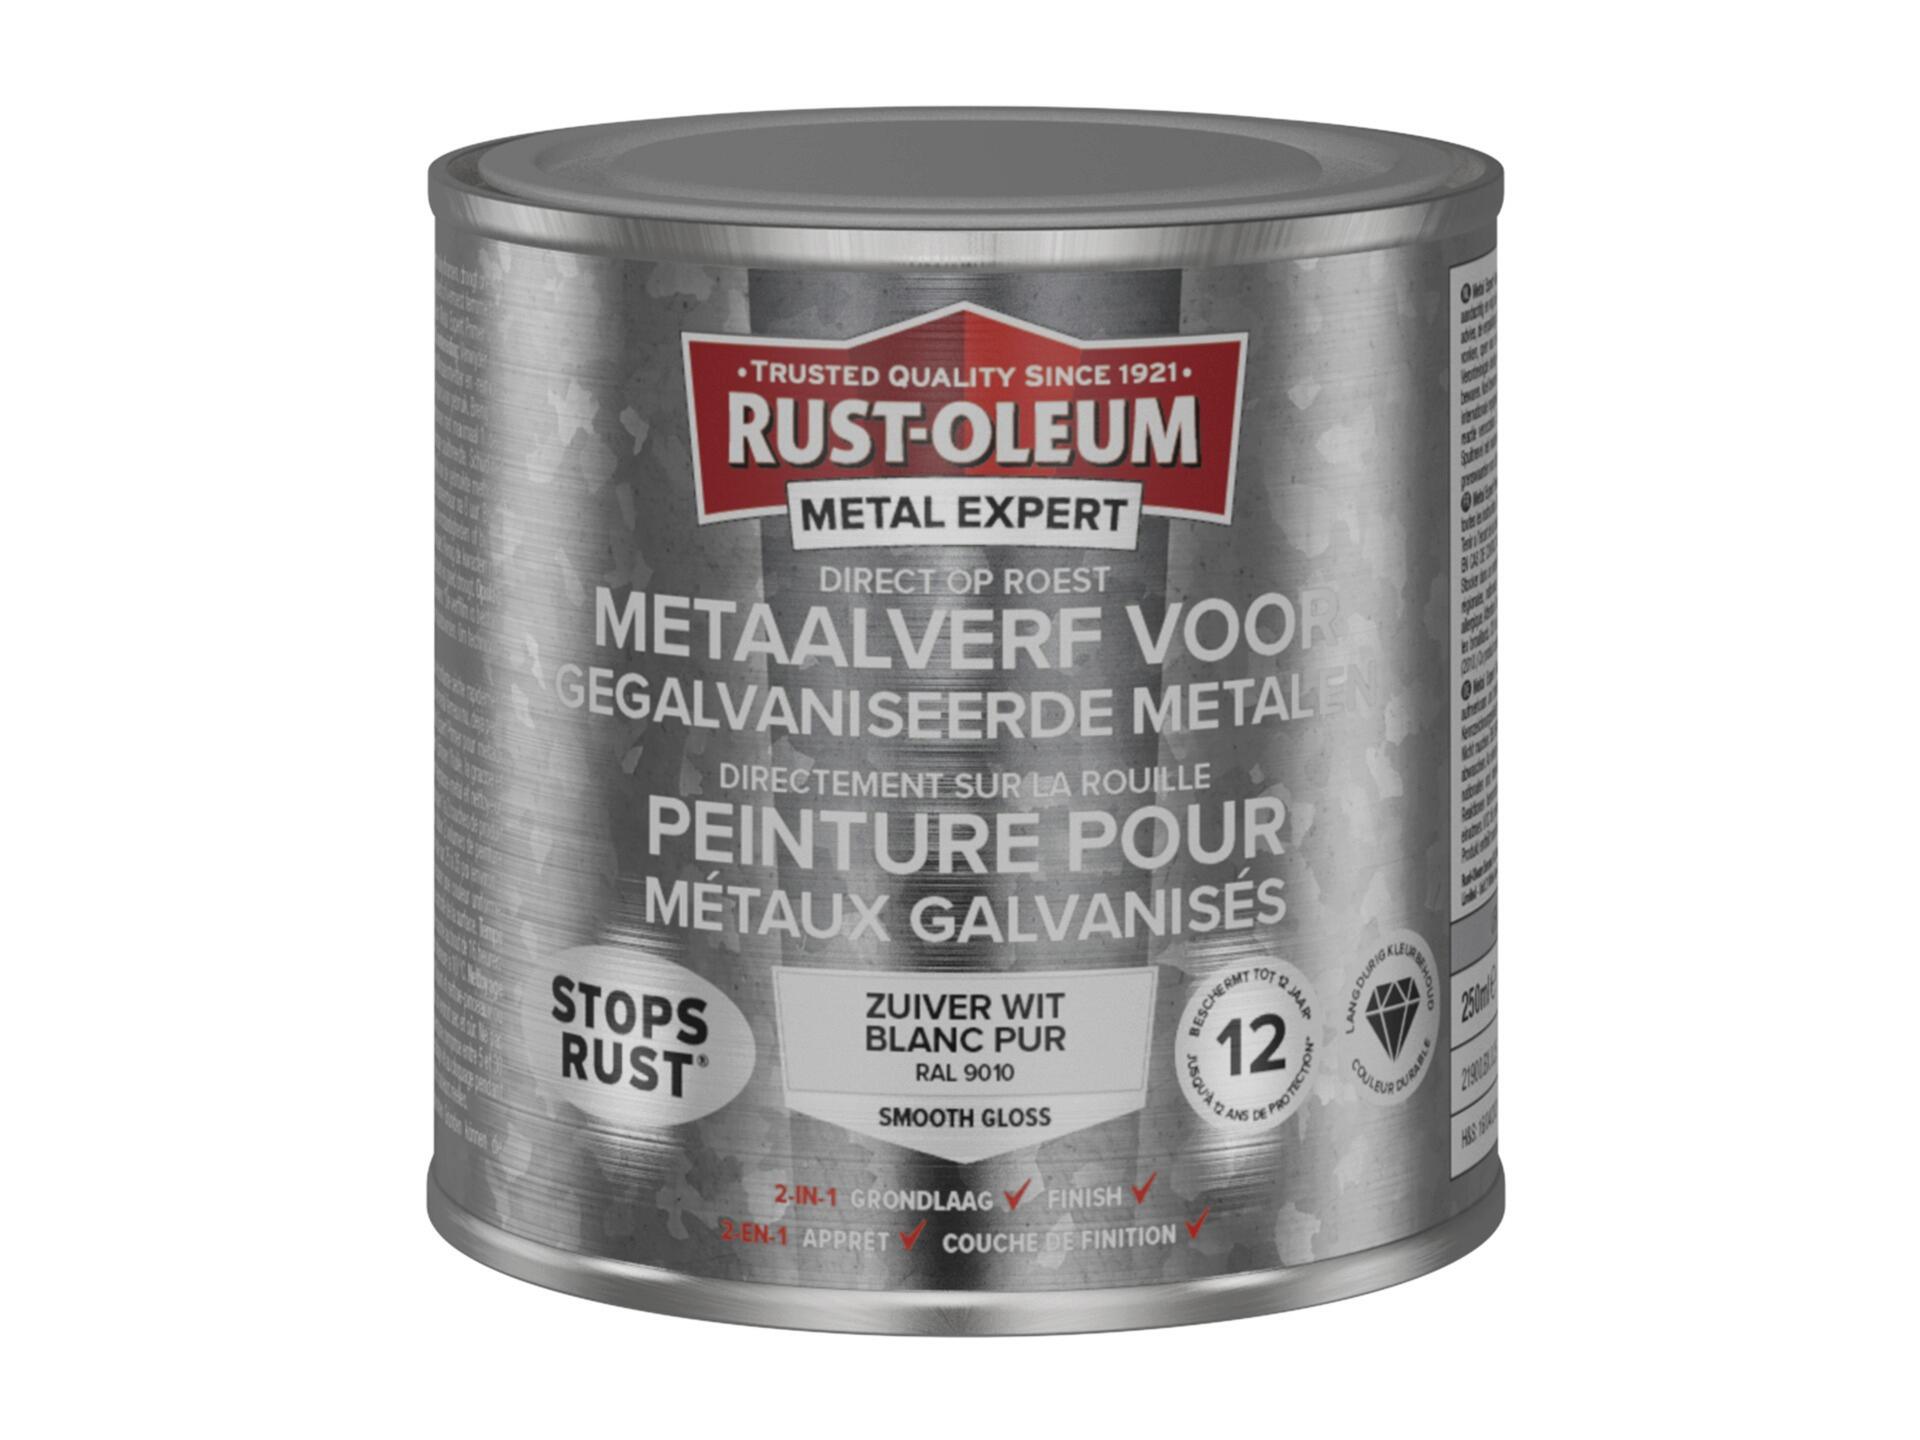 Rust-oleum Metal Expert peinture pour métaux galvanisés 250ml blanc pur